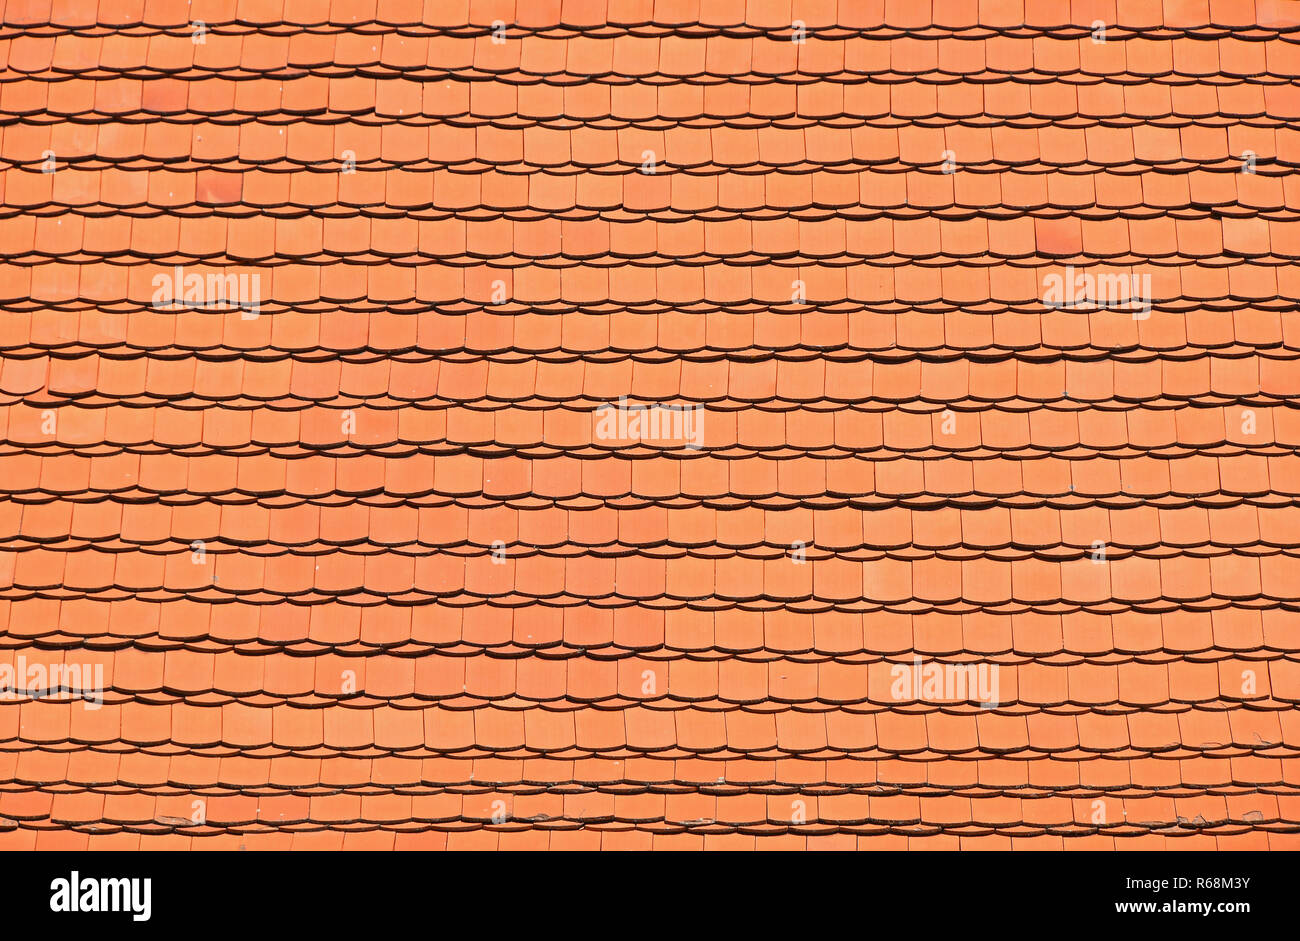 Rot Braun keramische Dachziegel Muster Hintergrund Stockfoto